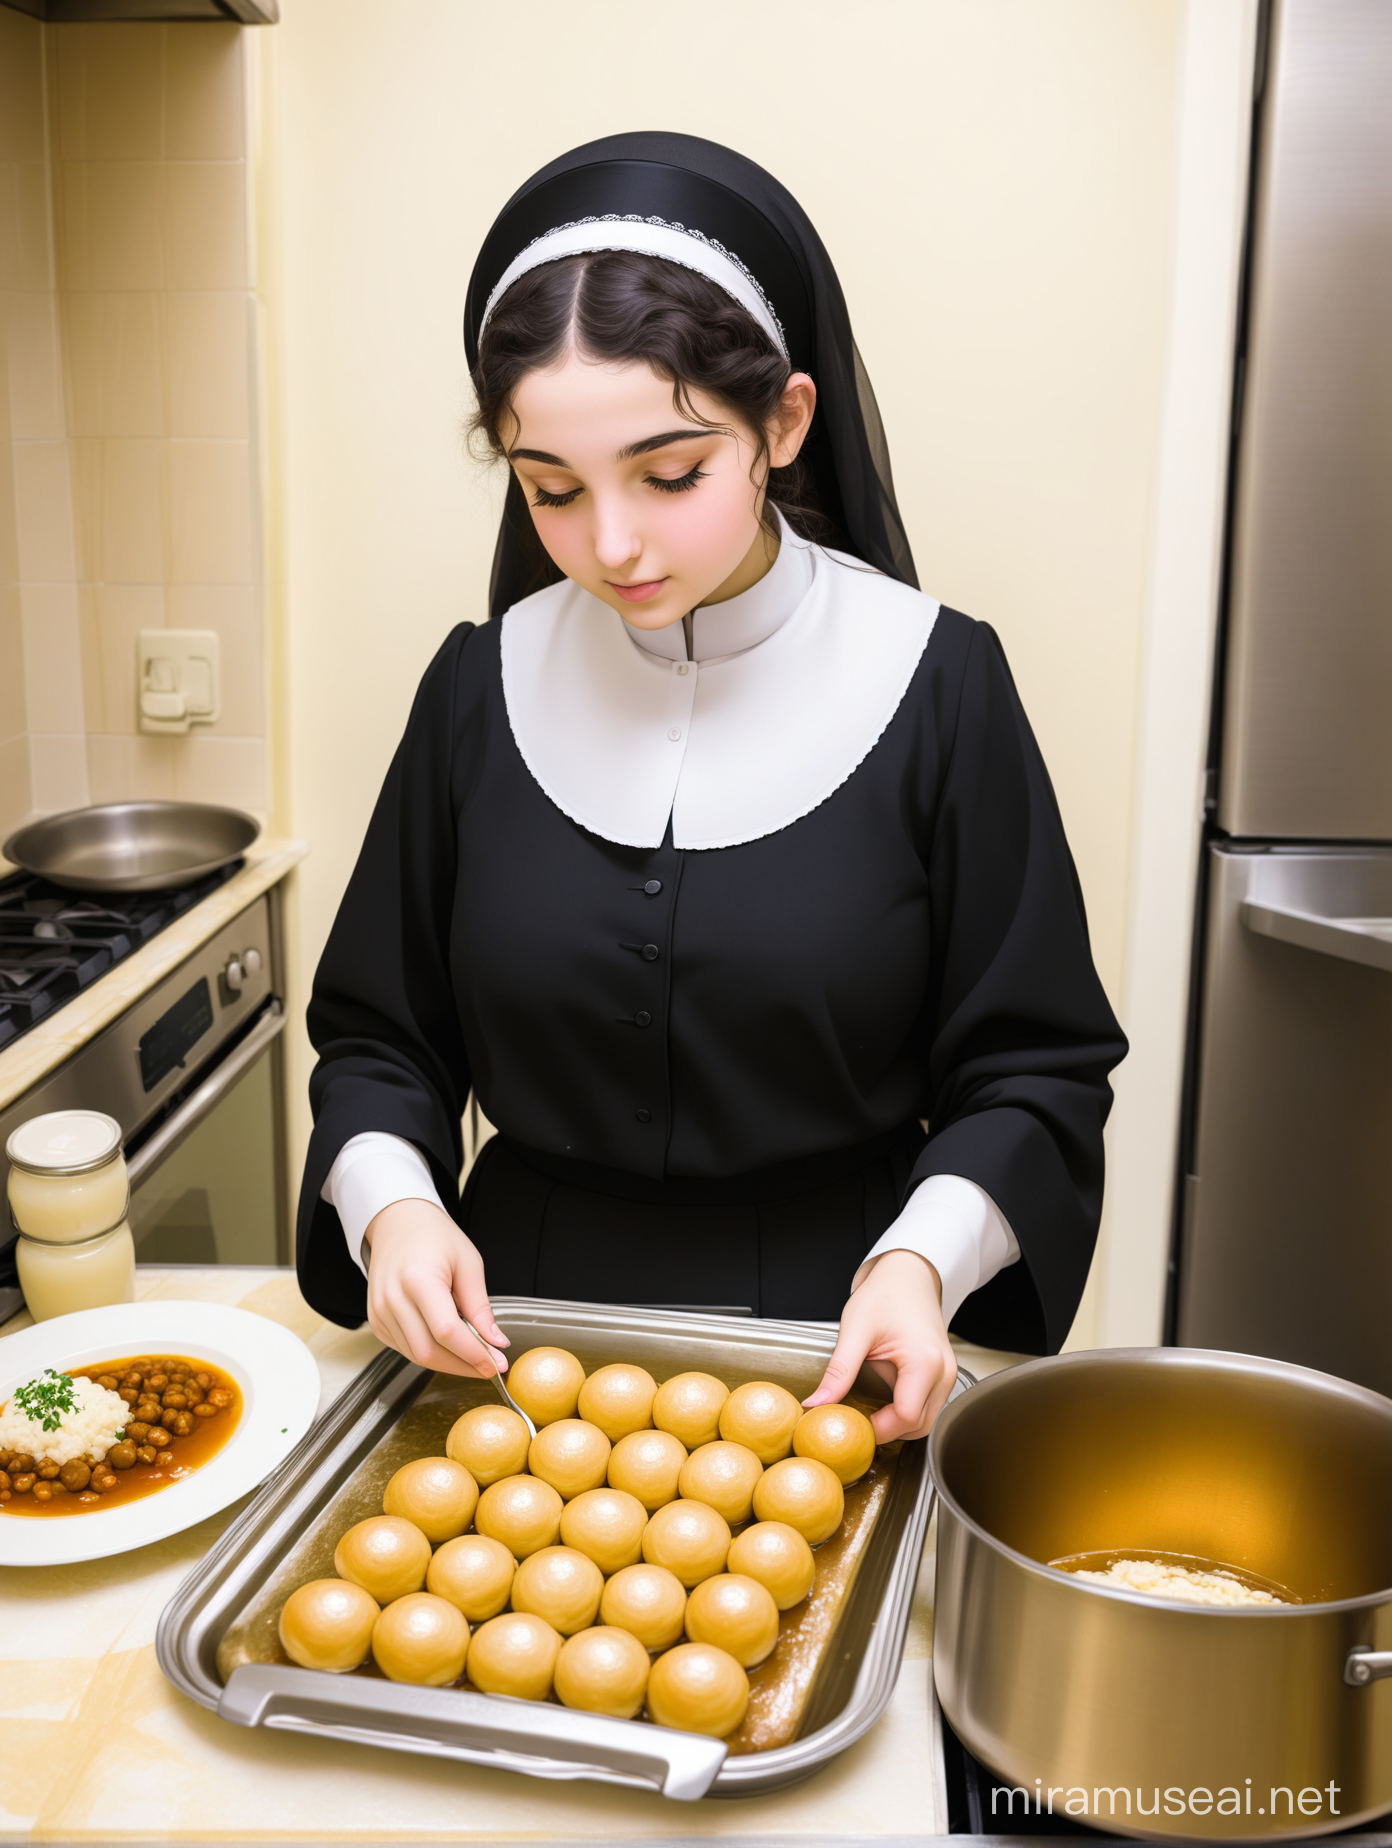 An ultra-Orthodox Jewish girl helps prepare Shabbat food